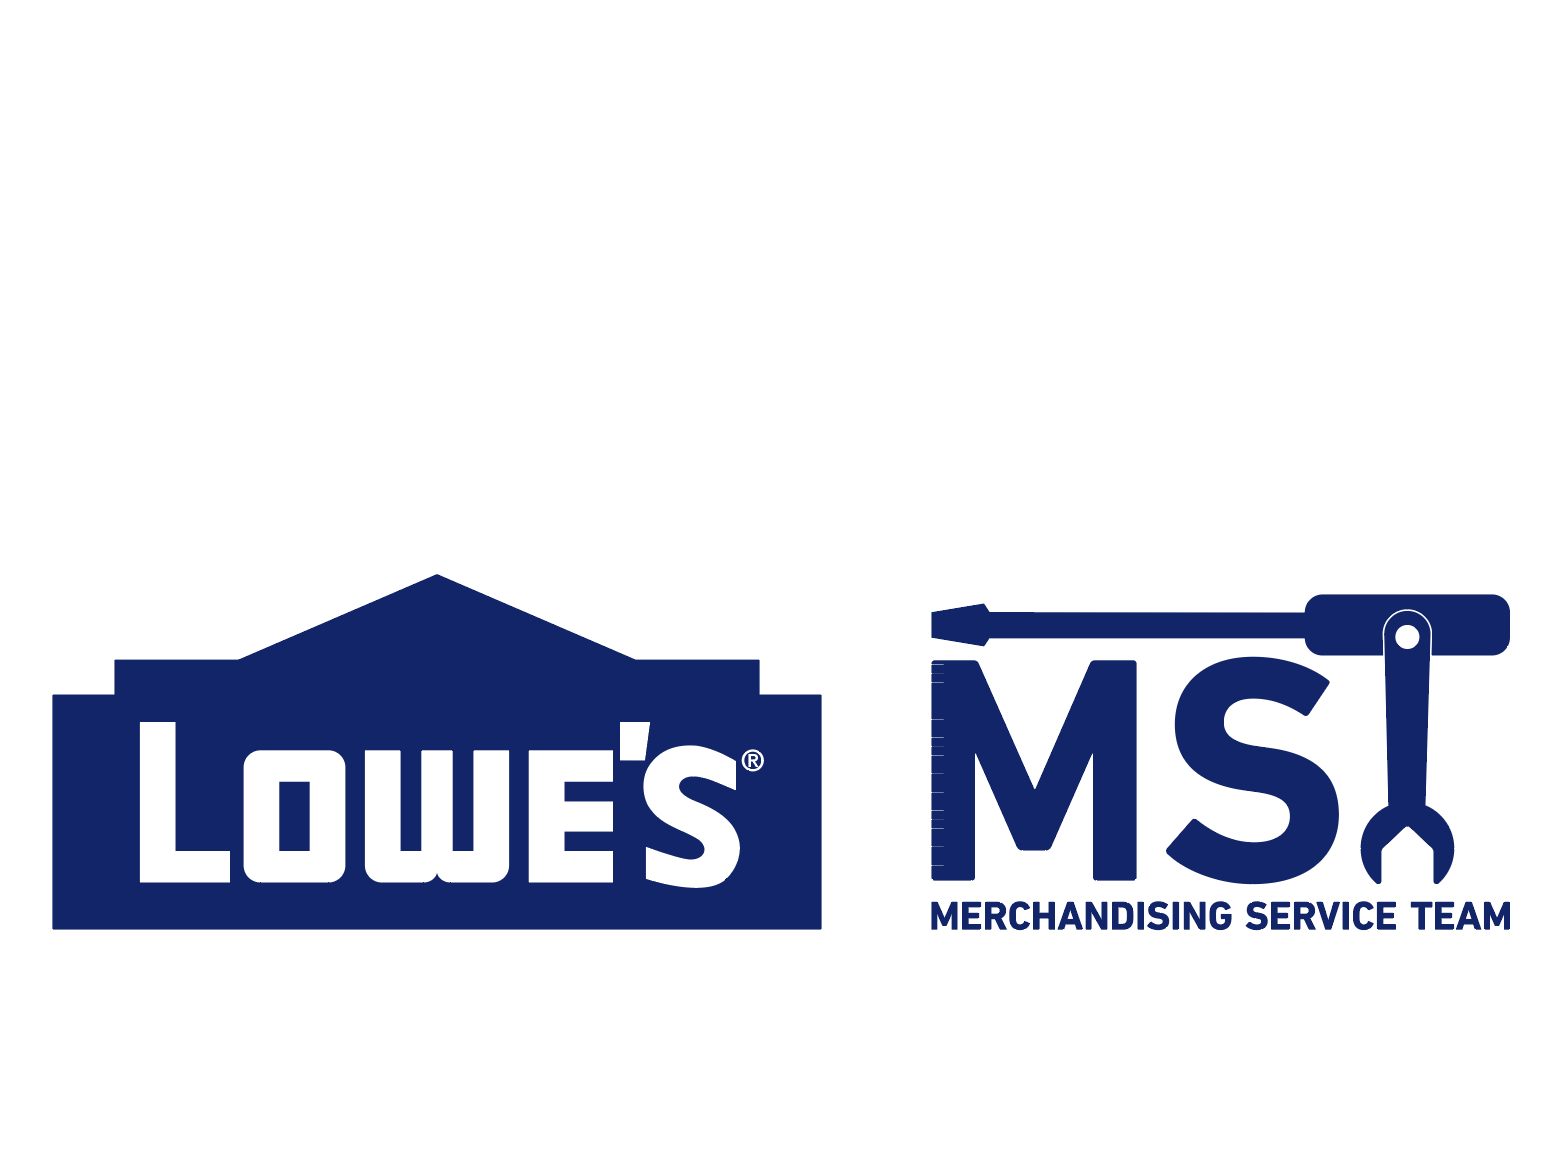 Merchandising Logo - Lowe's MST logo by Michael Griffin | Dribbble | Dribbble